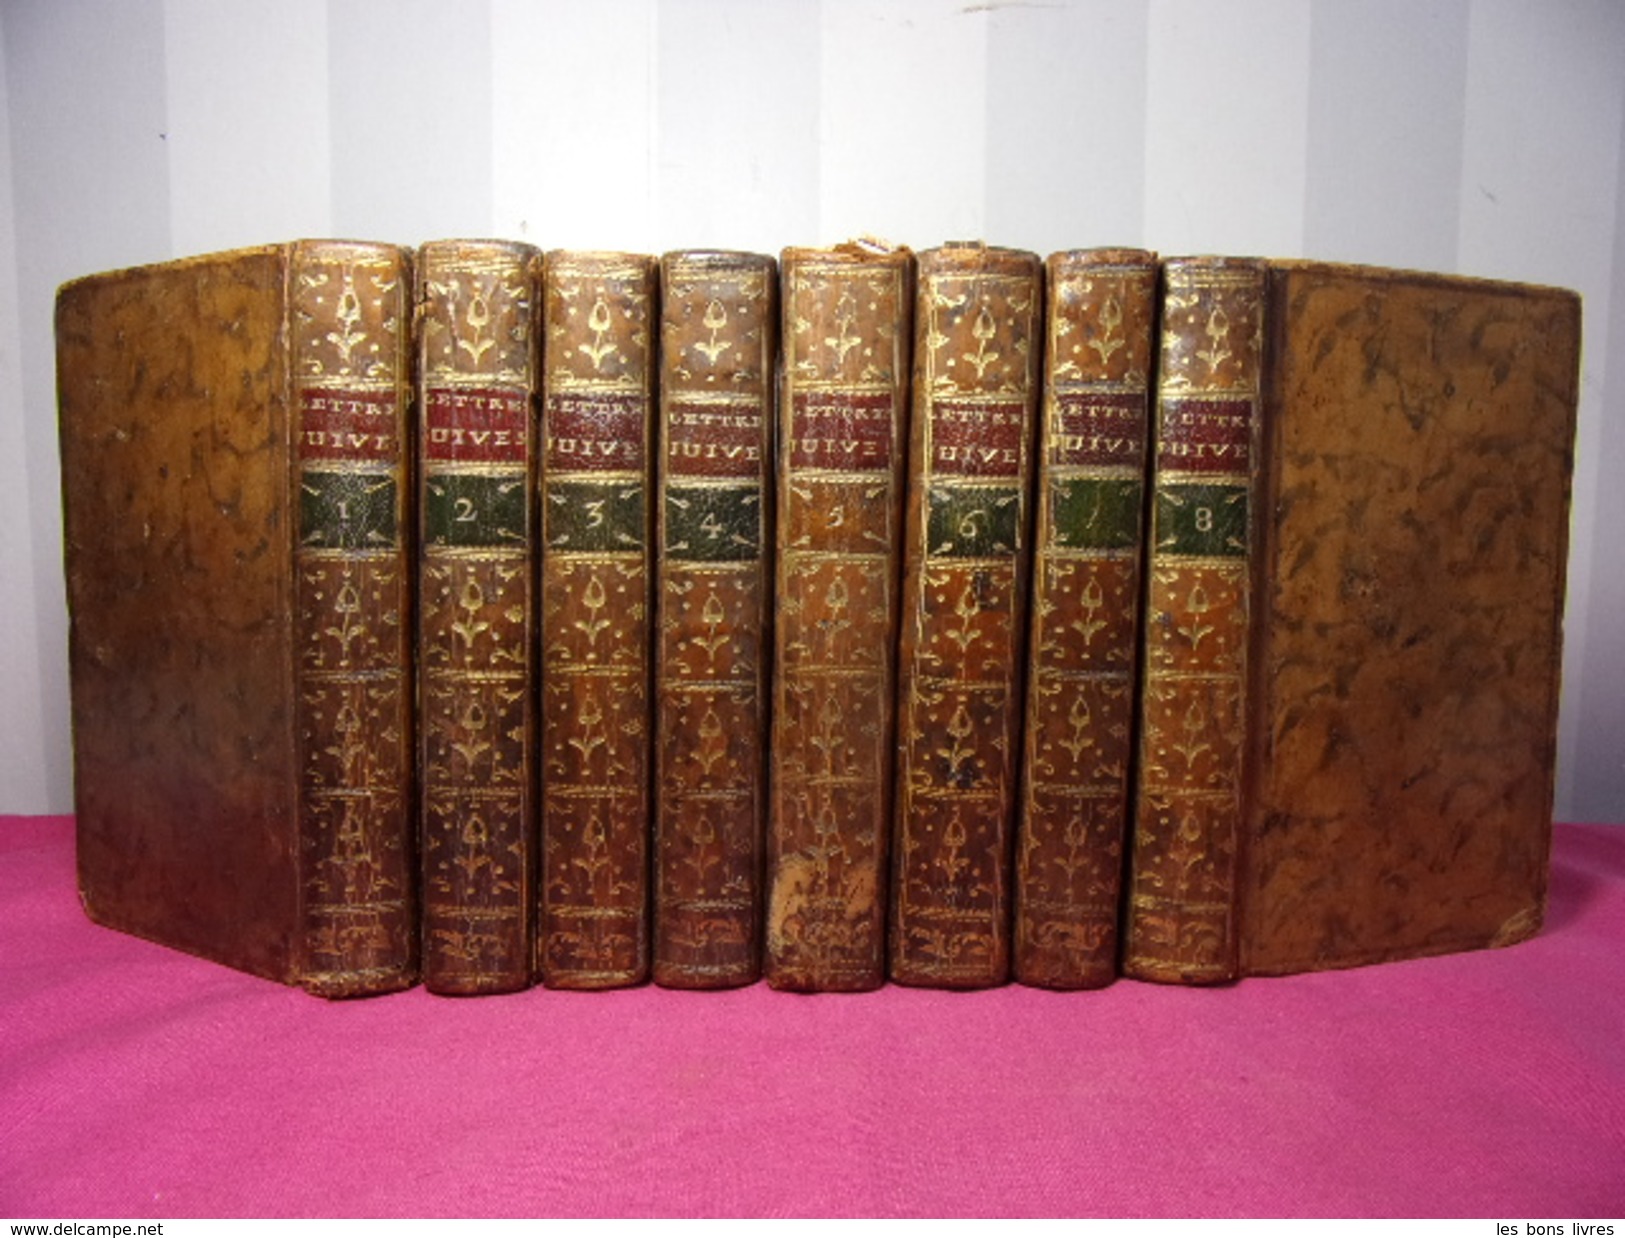 LETTRES JUIVES Ou Correspondance Philosophique Marquis D'Agens 8/8 Vols 1777 - Before 18th Century